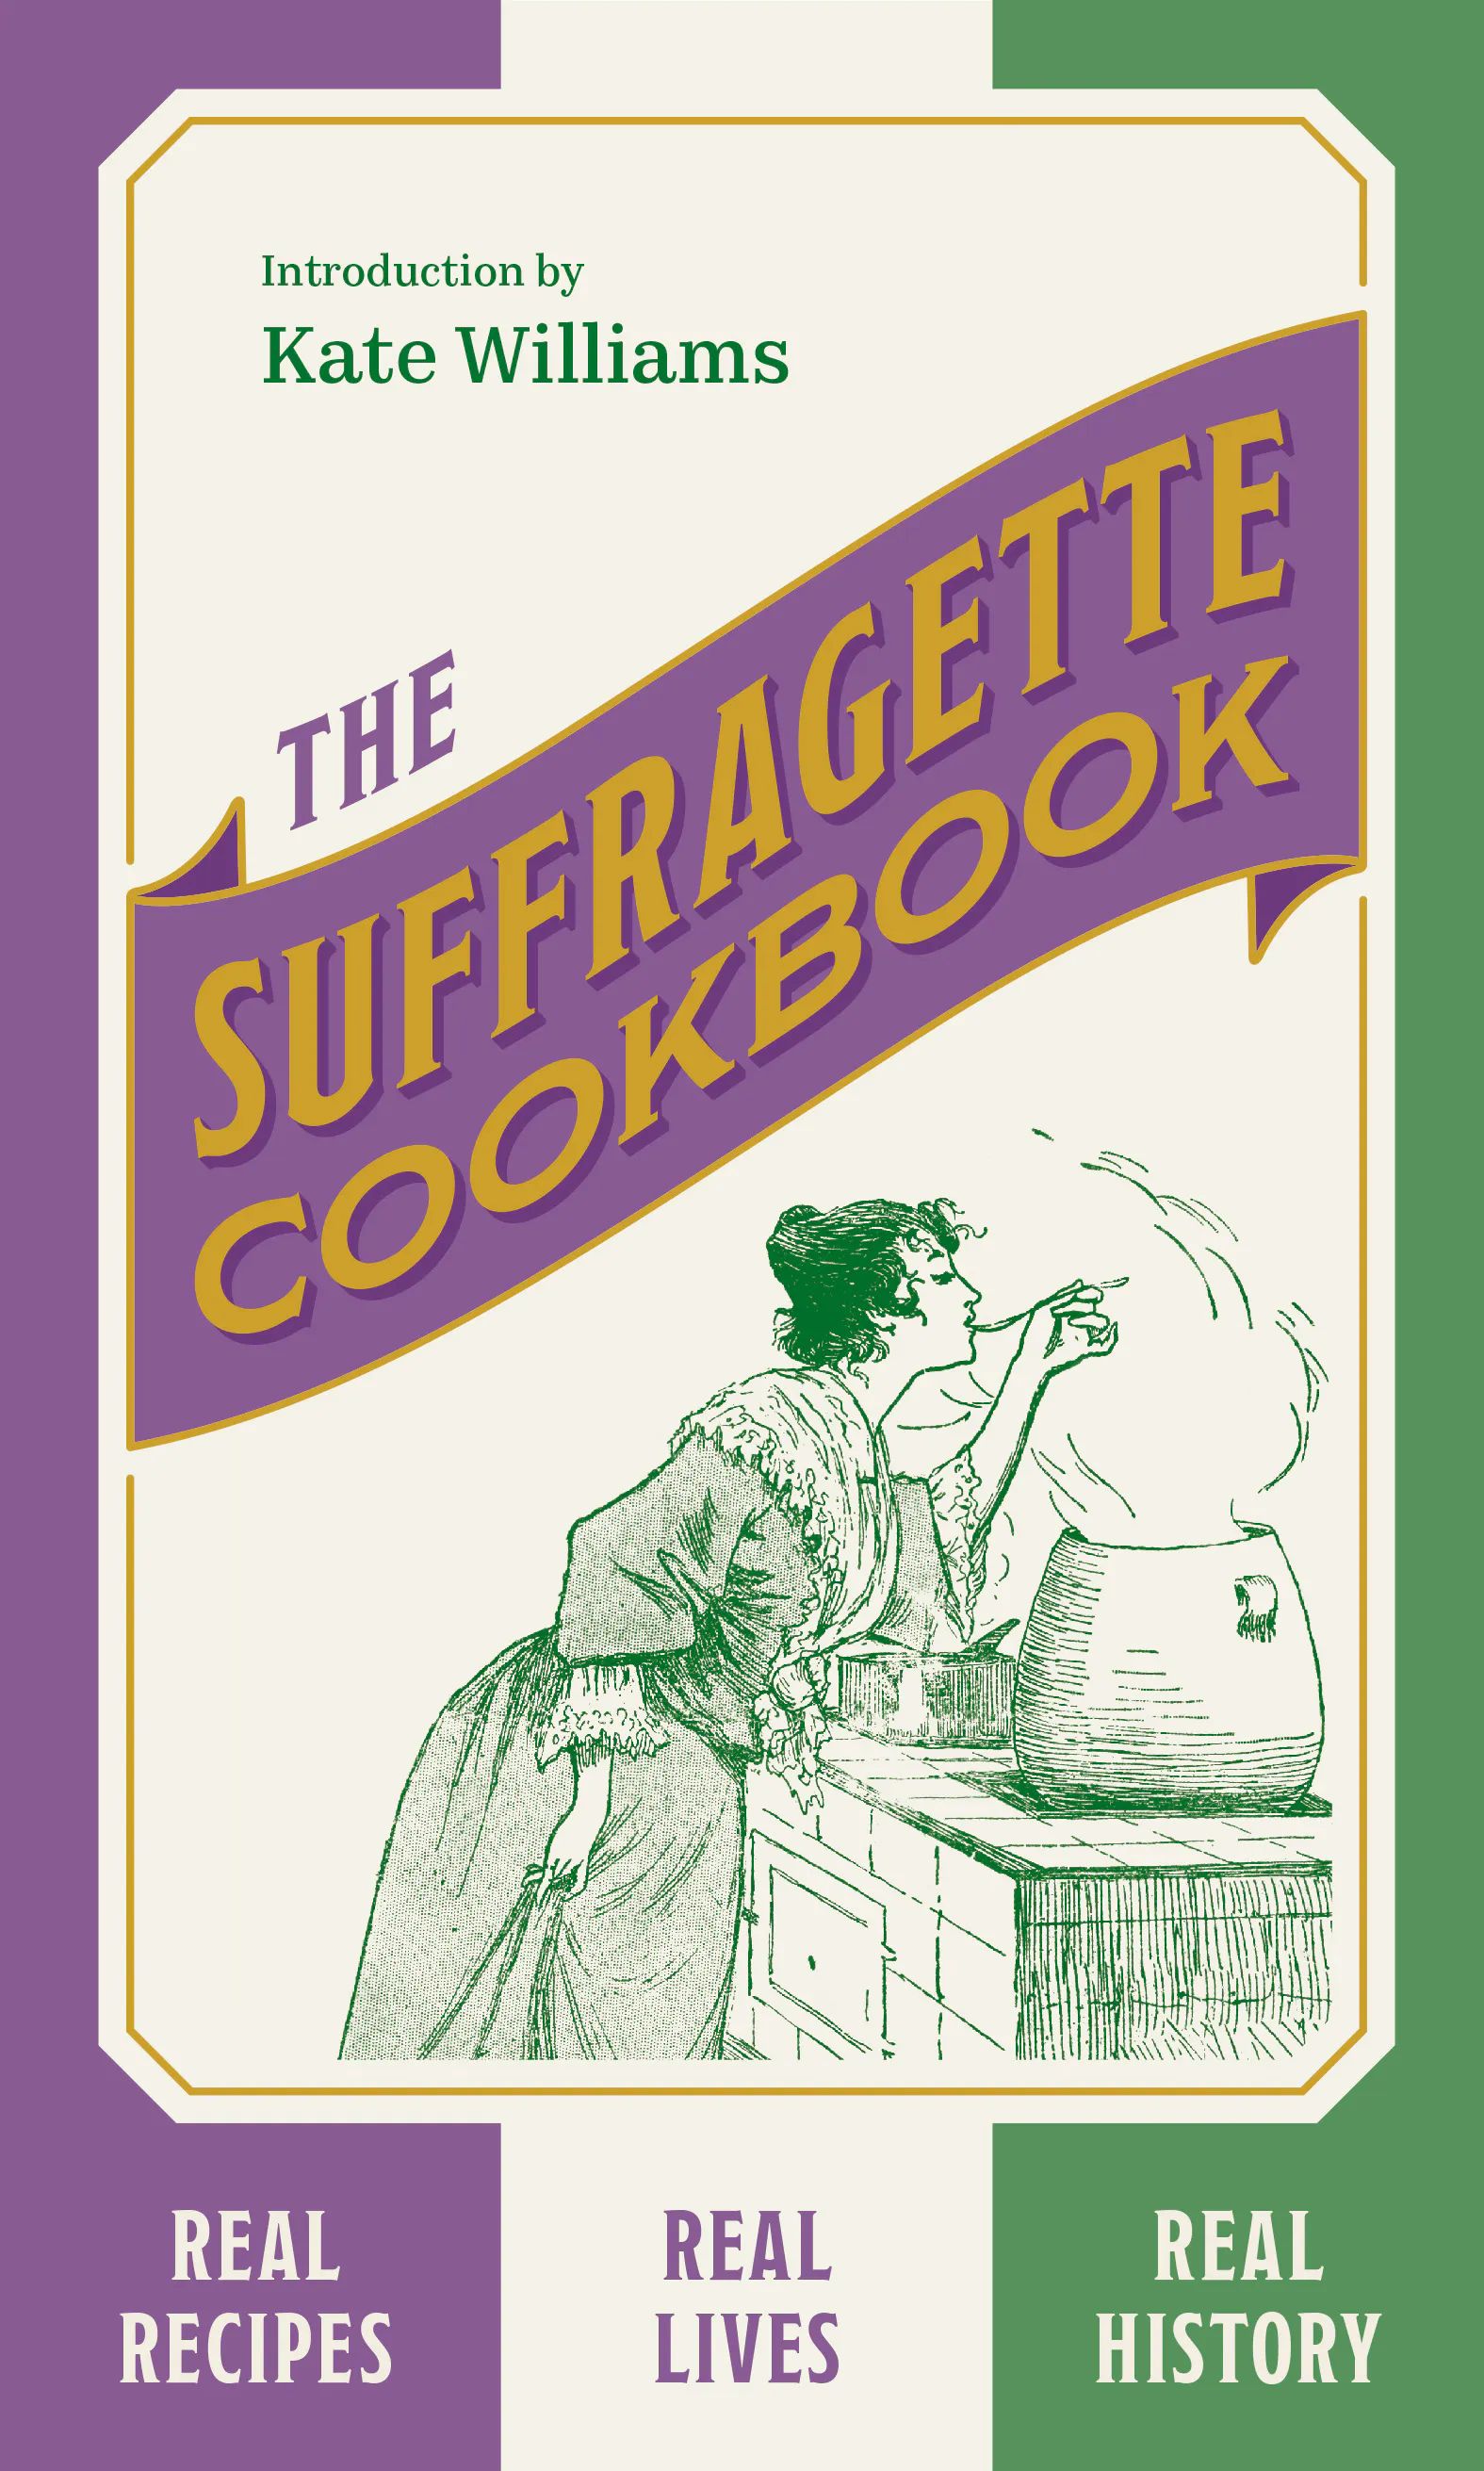 The Suffragette Cookbook